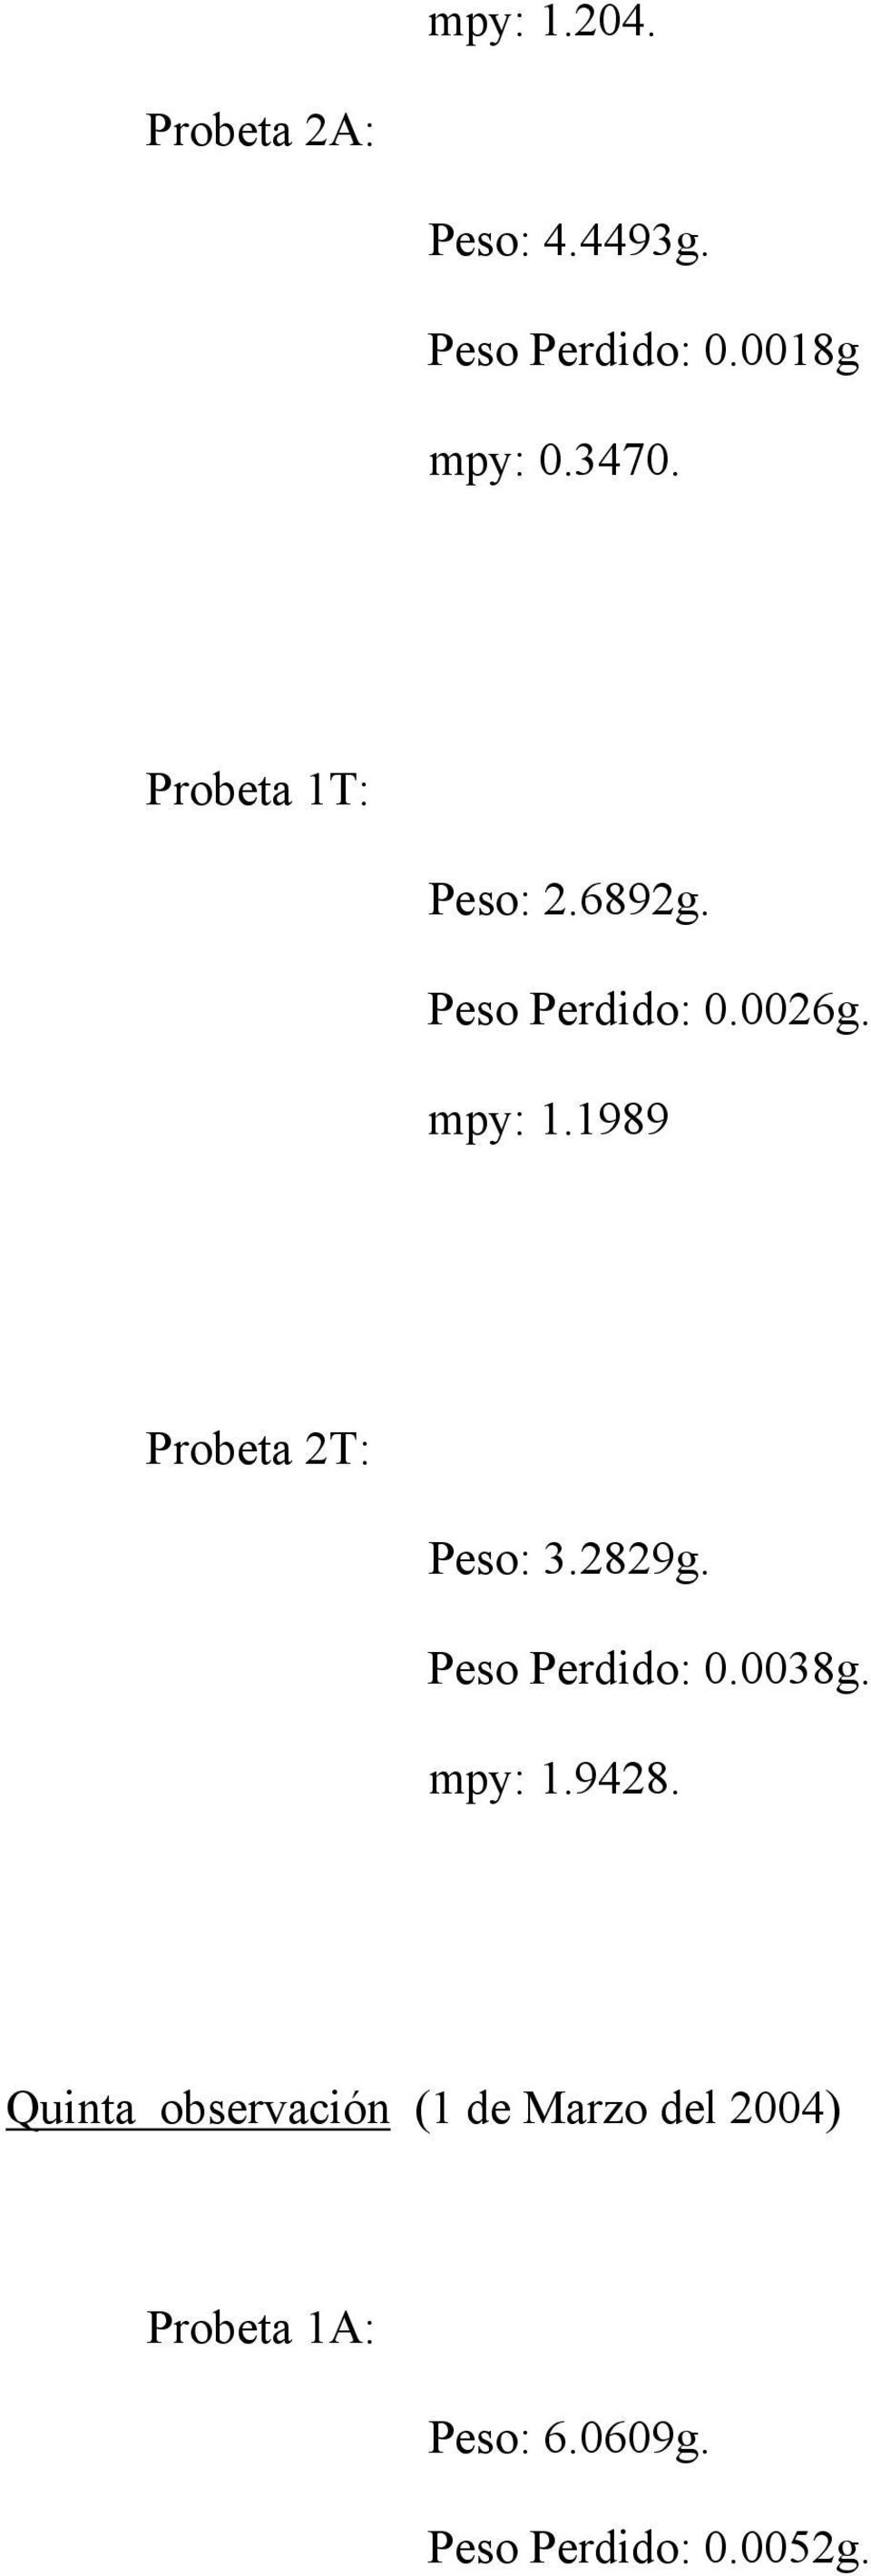 1989 Probeta 2T: Peso: 3.2829g. Peso Perdido: 0.0038g. mpy: 1.9428.